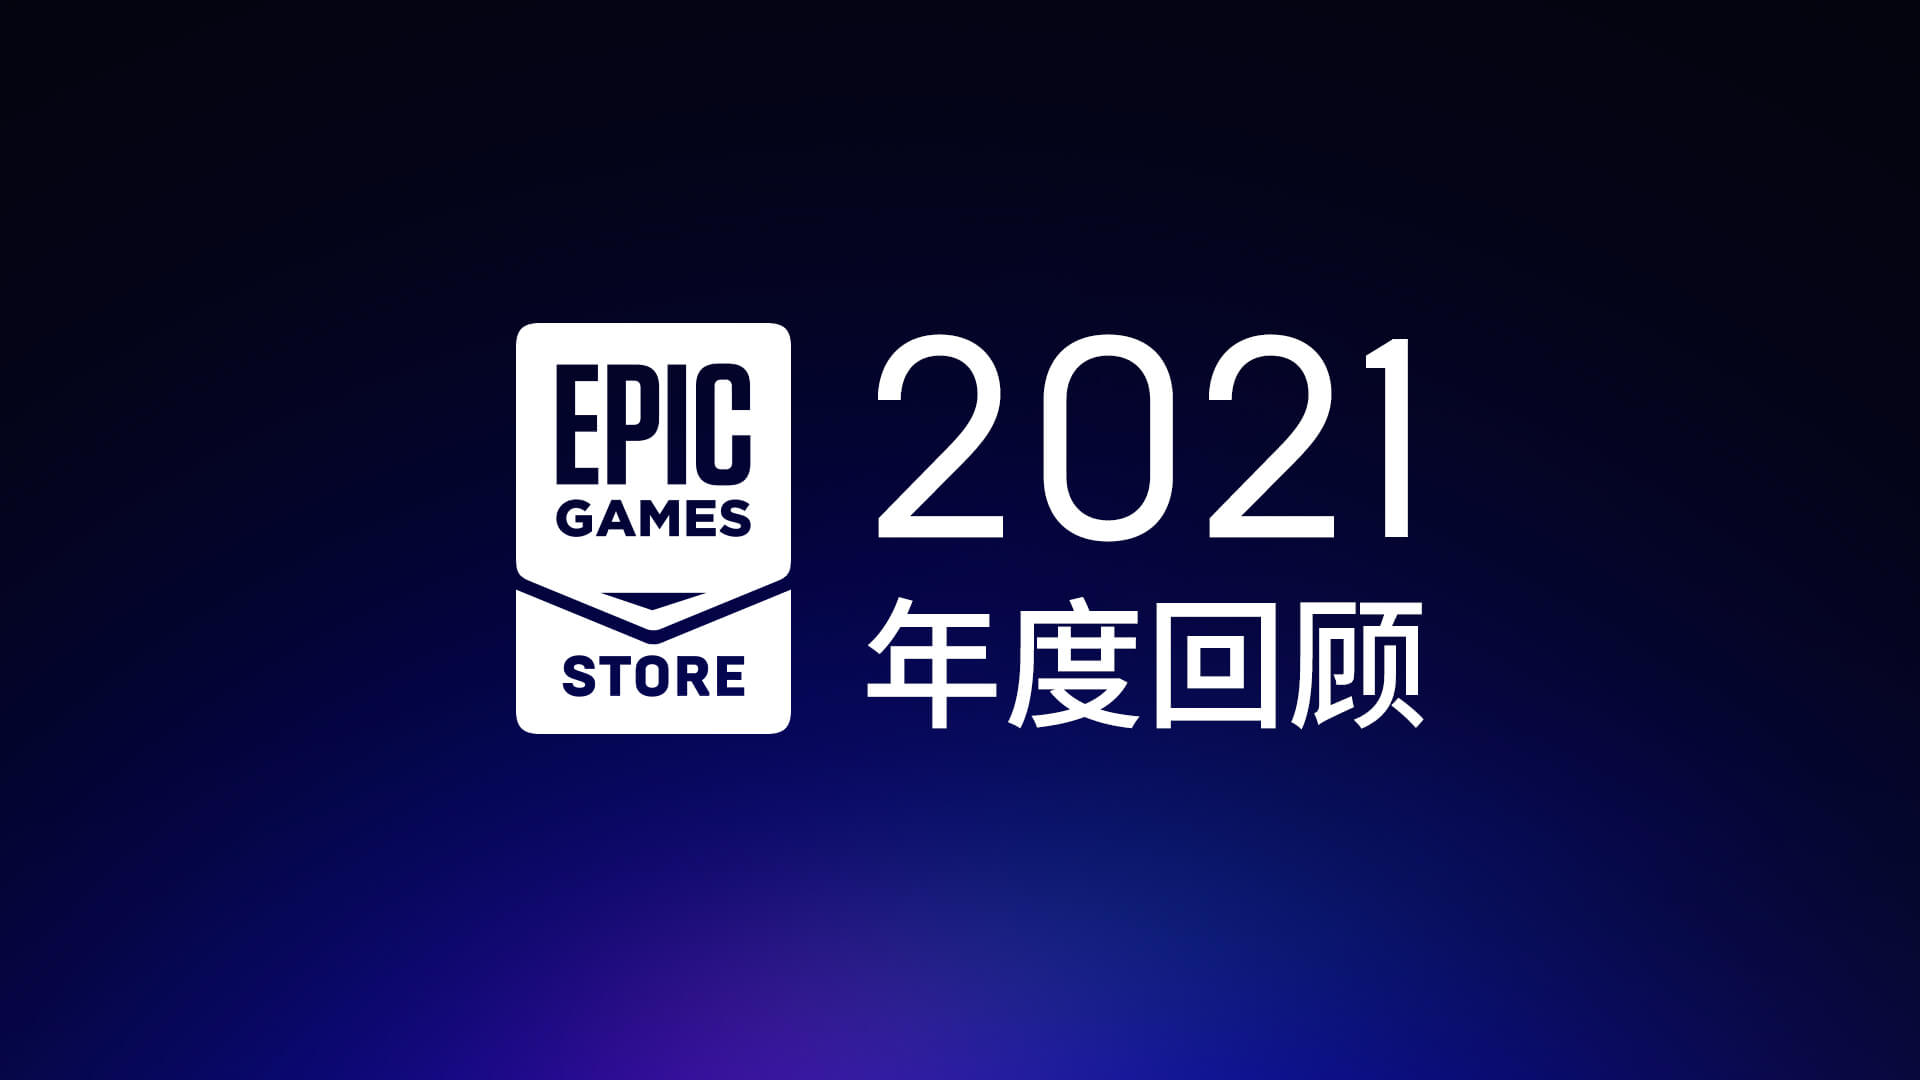 Epic  Store回顾了2021年免费游戏的总价值为2120美元。